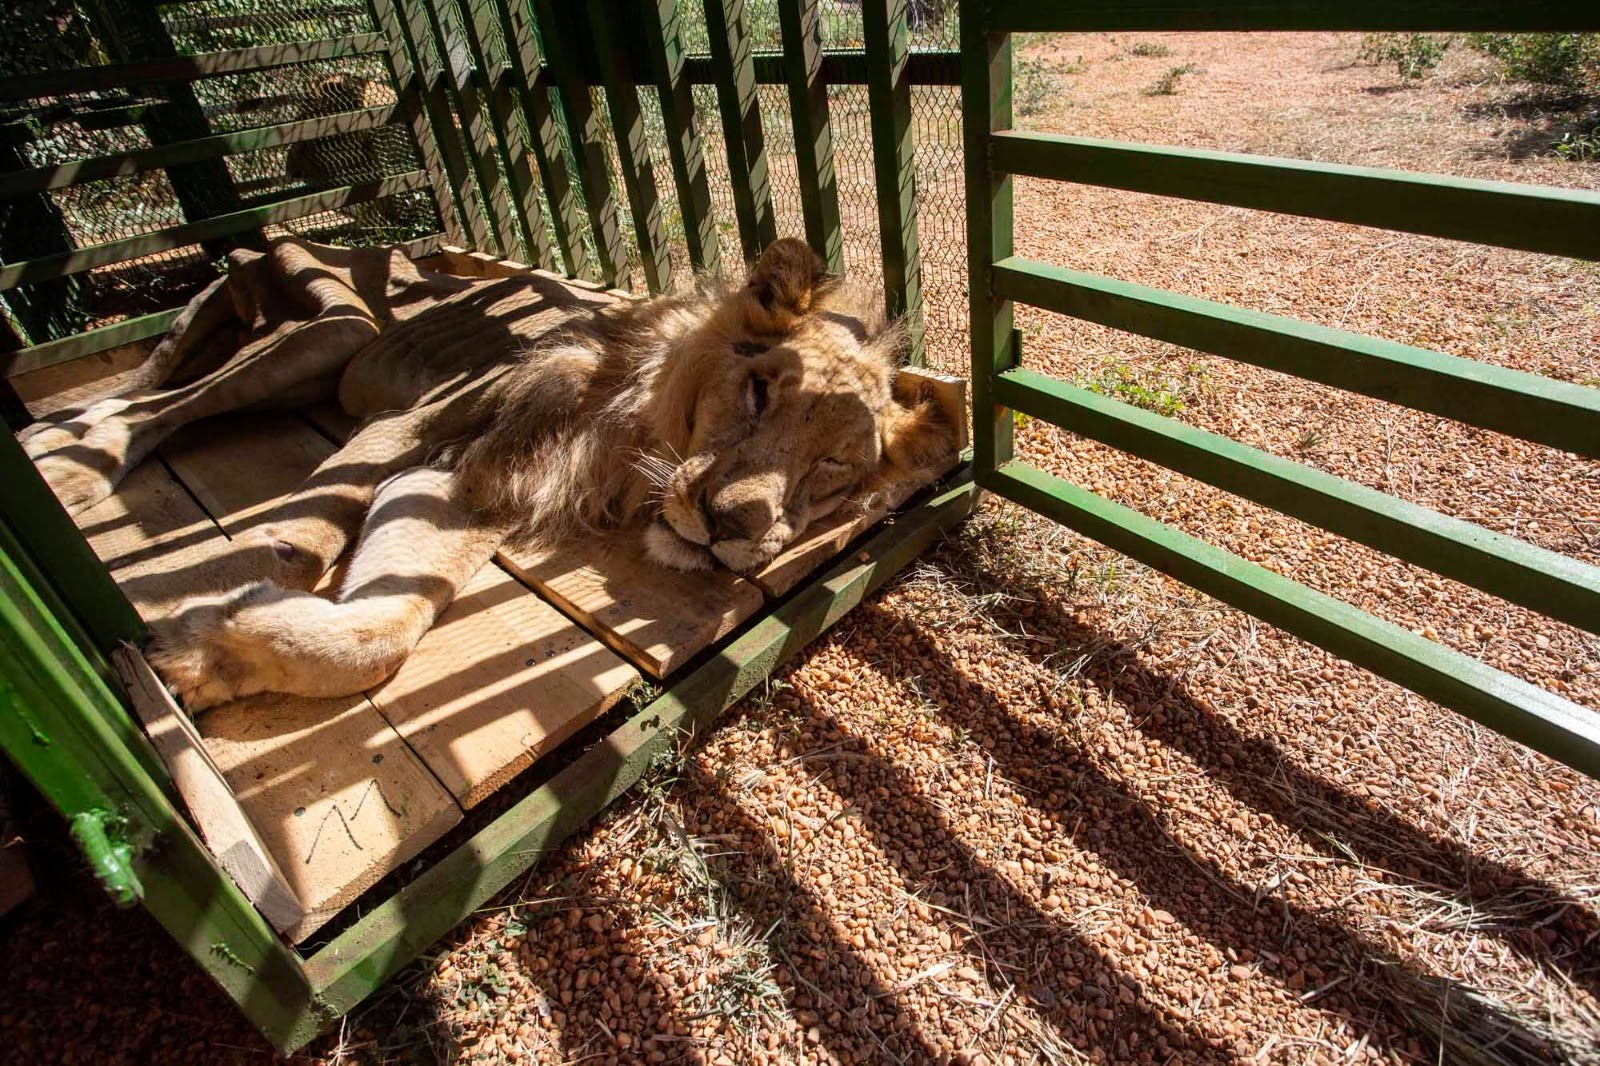 Vier Voeters redt bijna vijftig wilde dieren uit conflictgebied in Soedan